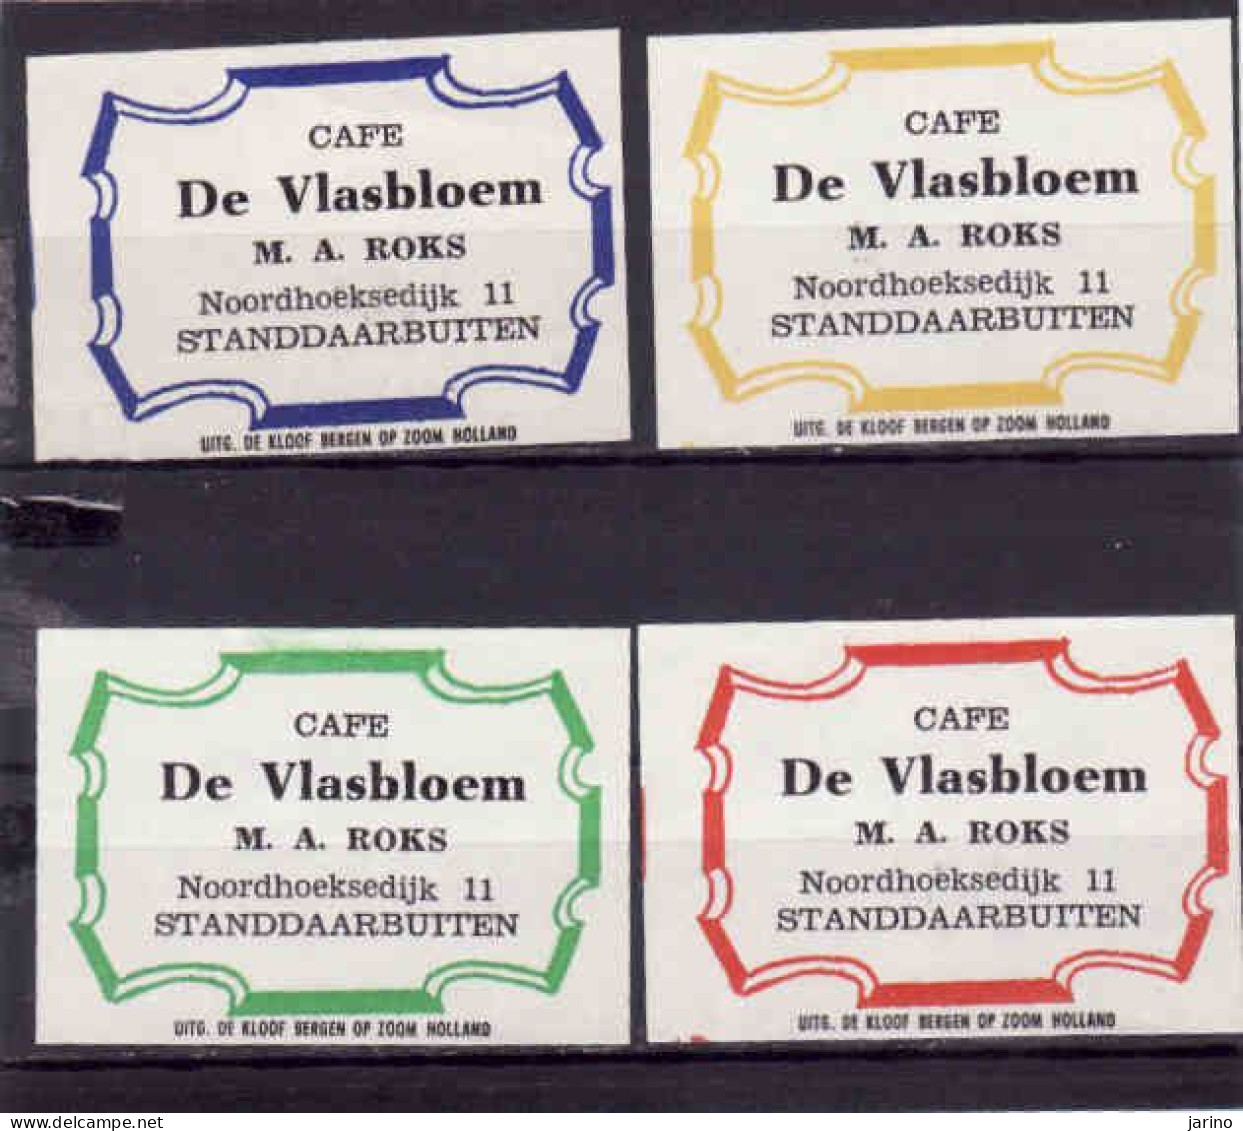 4 Dutch Matchbox Labels, Standdaarbutten - North Brabant, Cafe De Vlasbloem, M. A. Roks, Holland, Netherlands - Zündholzschachteletiketten